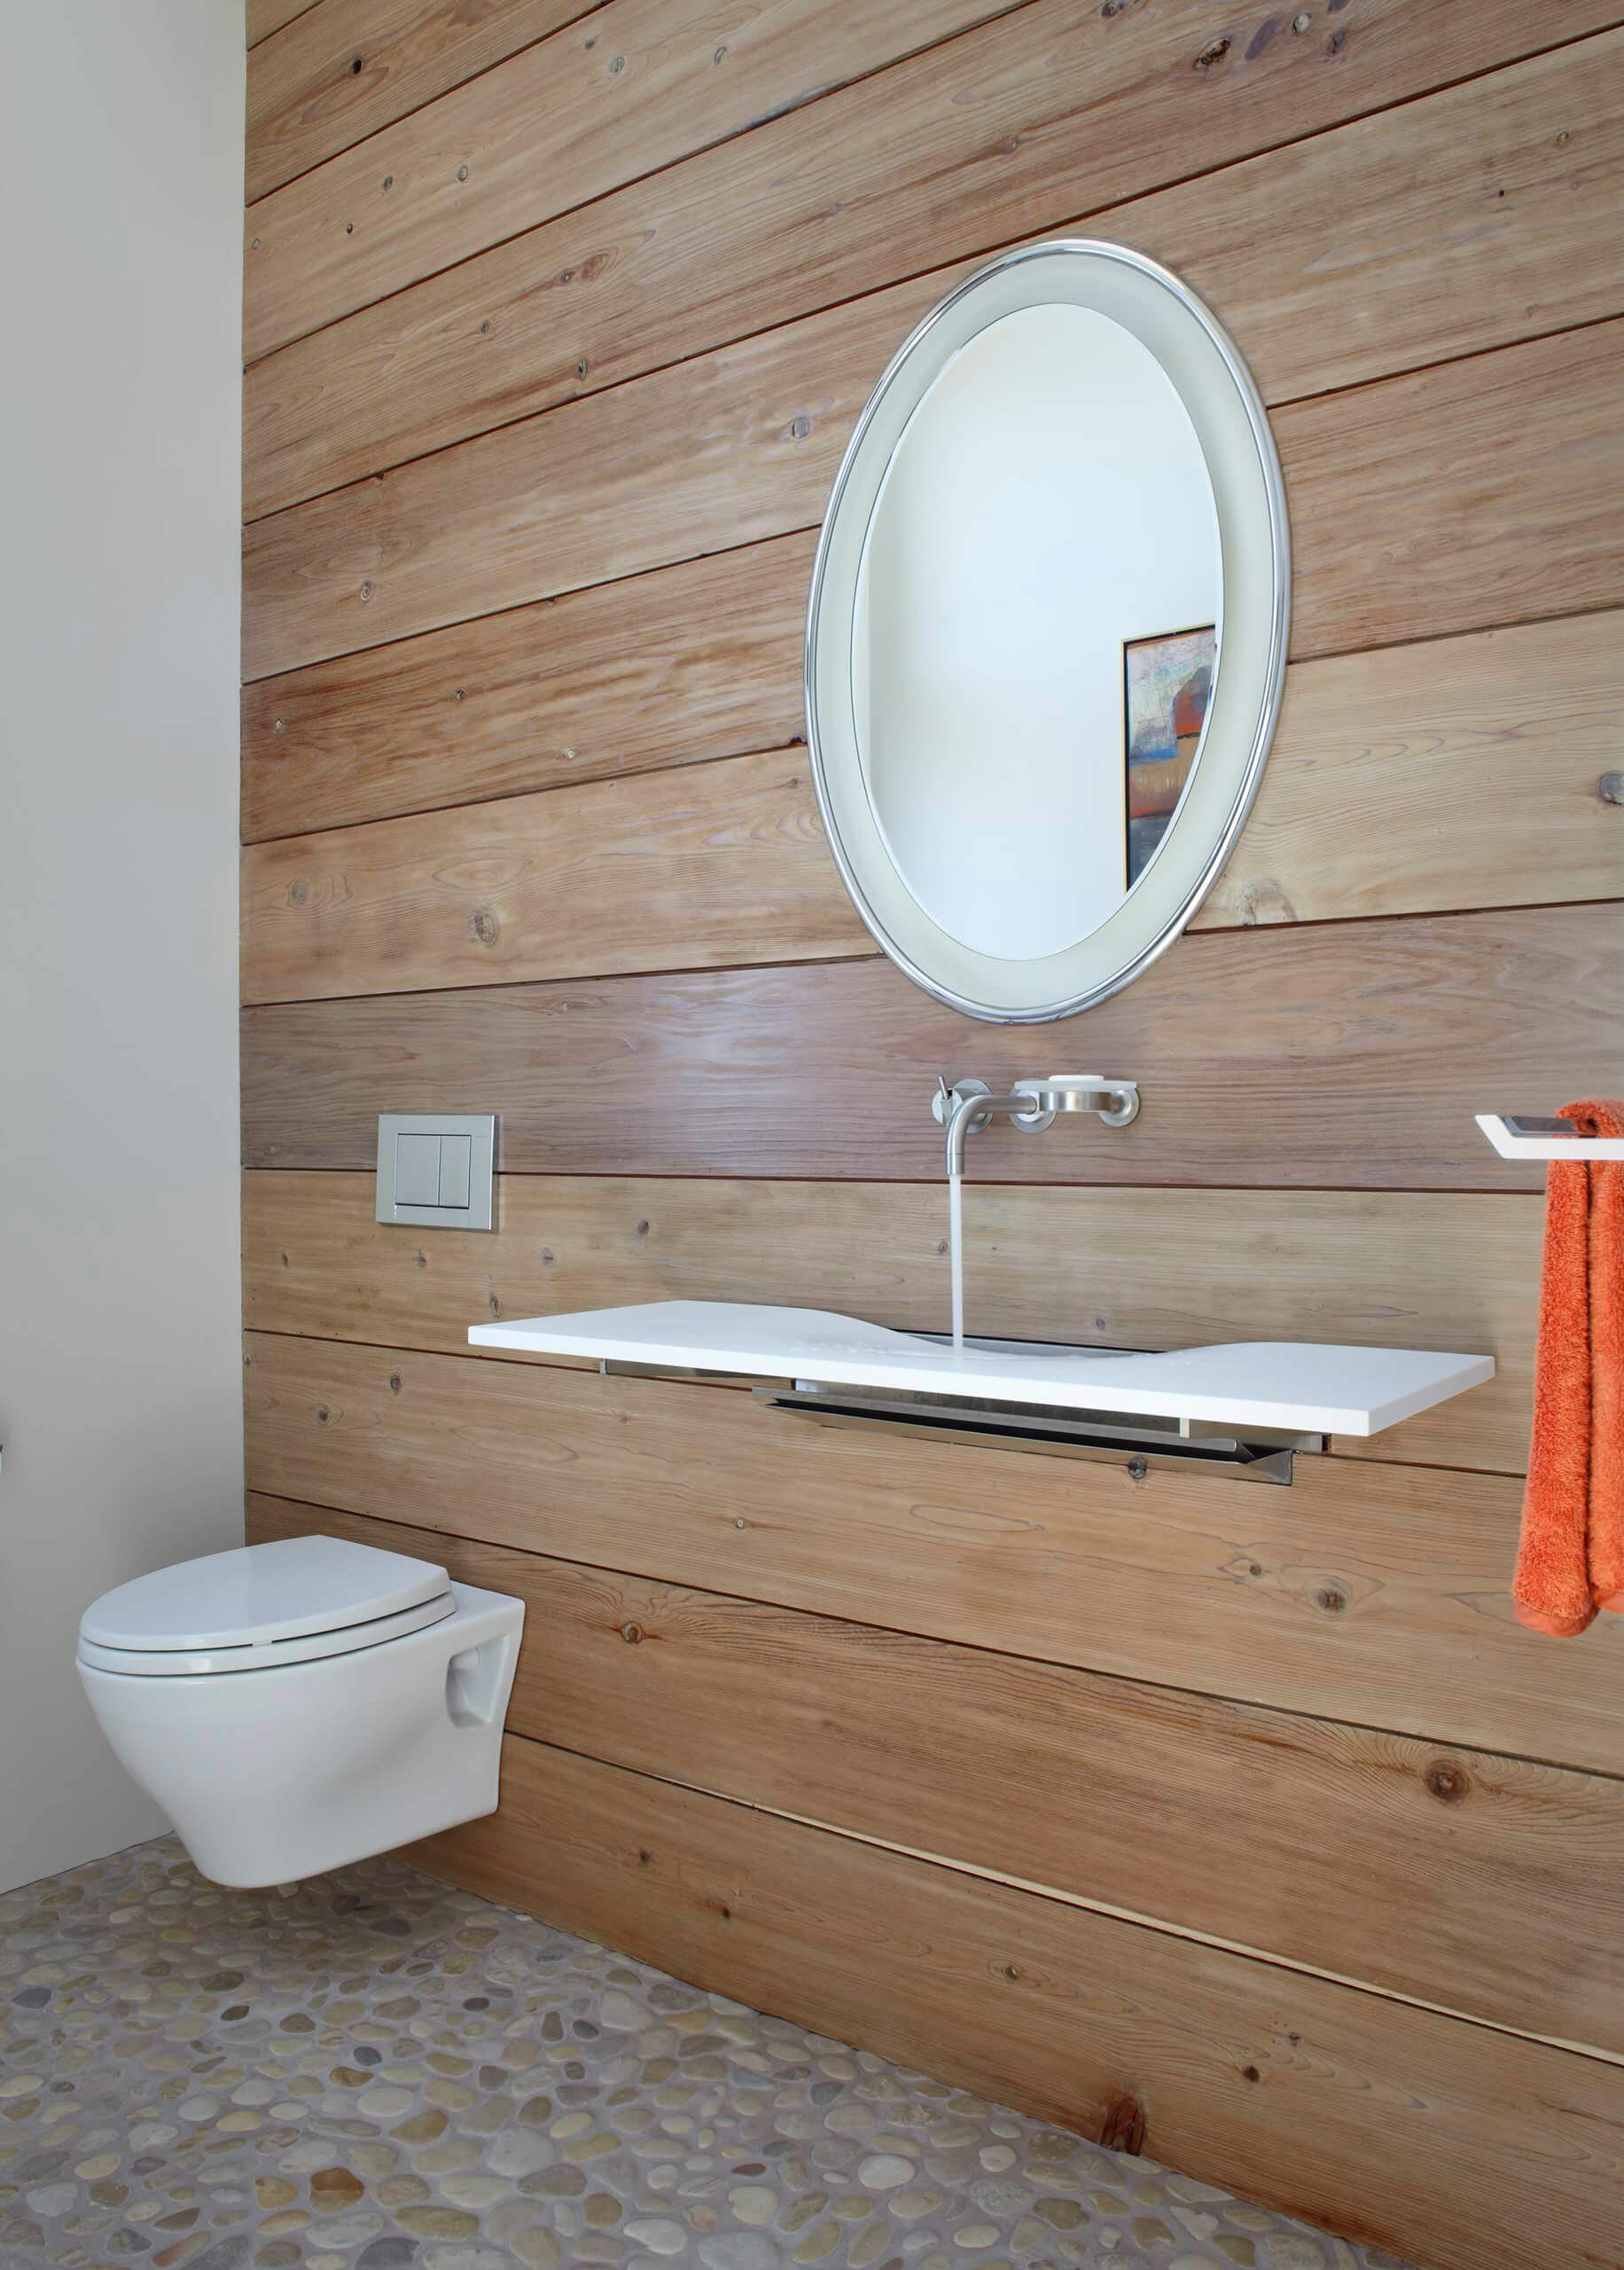 5 contemporary bathroom faucet designs